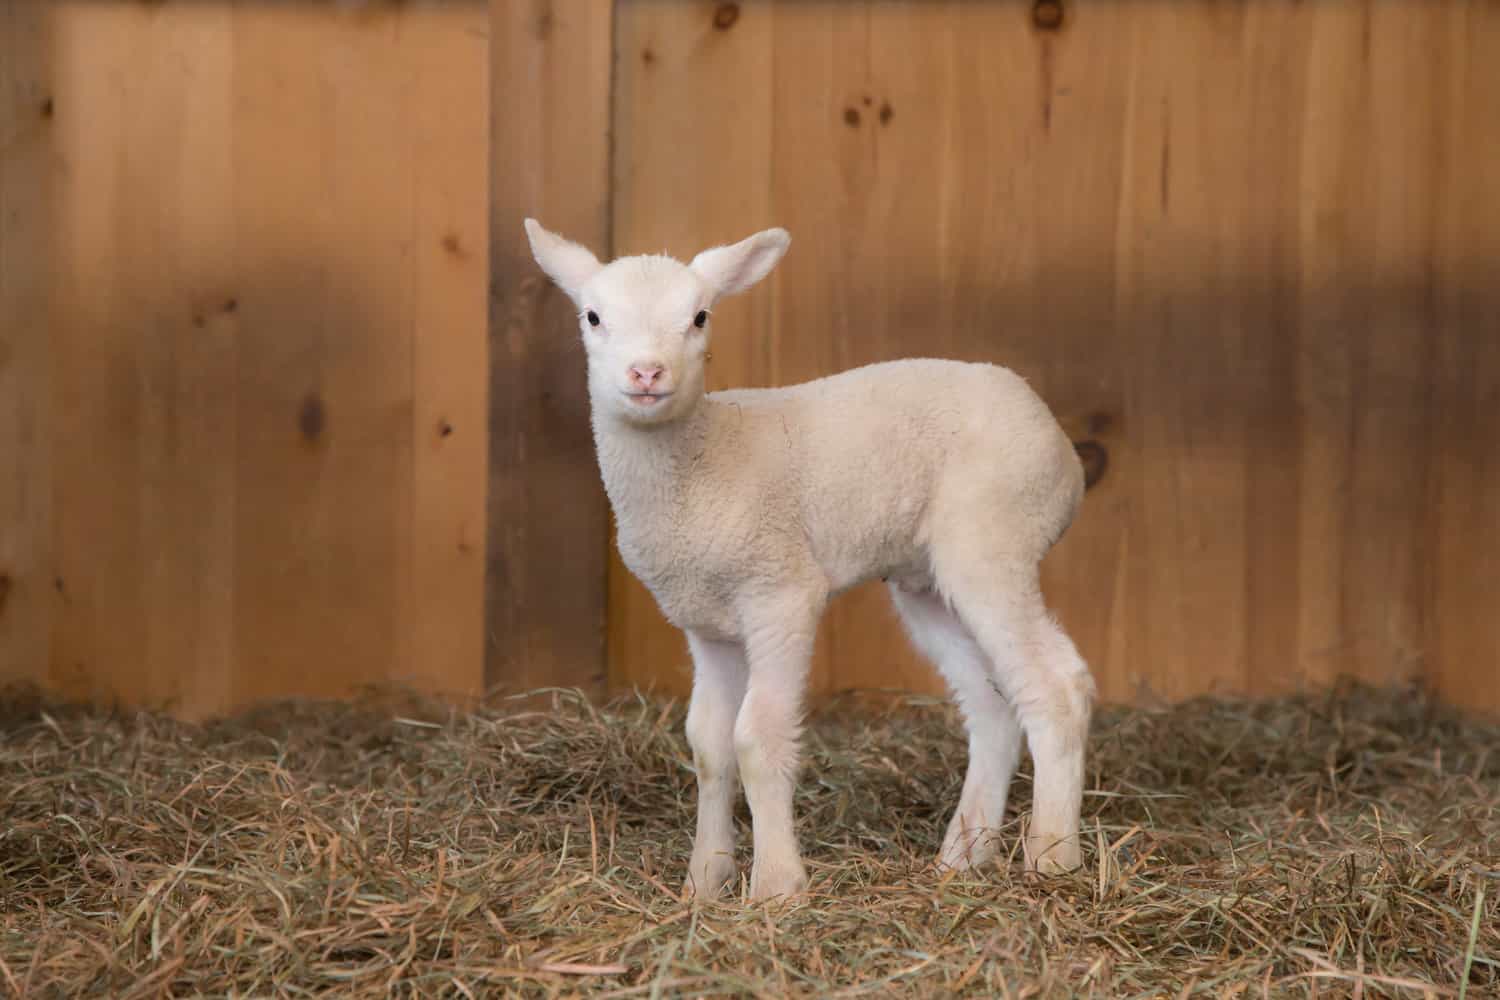 Fat Sheep Farm & Cabins Baby Lamb in Barn